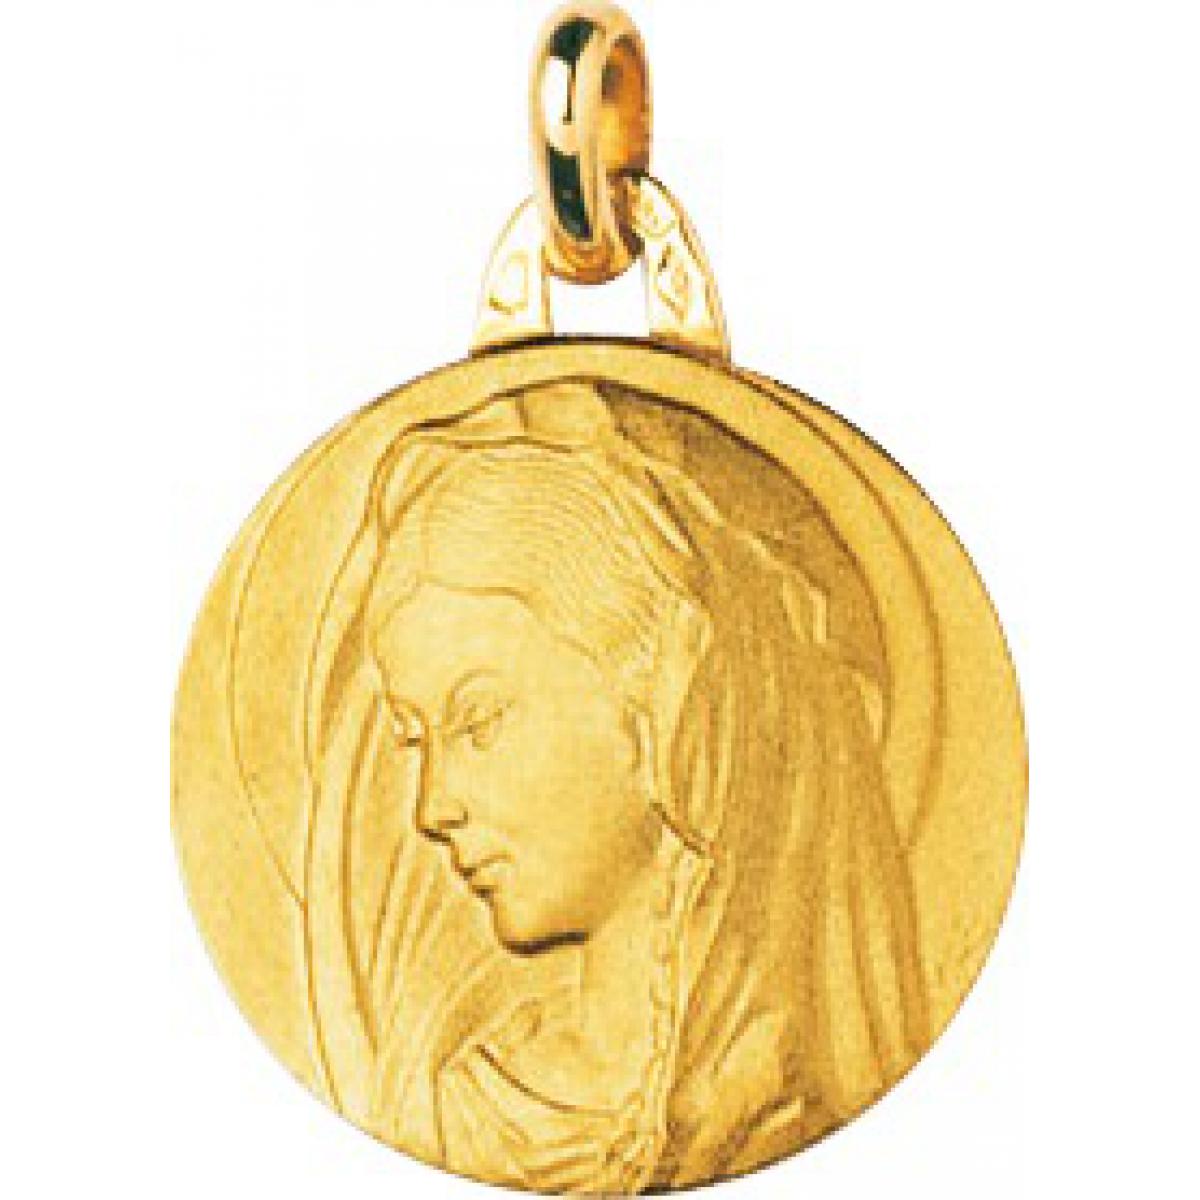 Médaille vierge or 750/1000 jaune (18K)